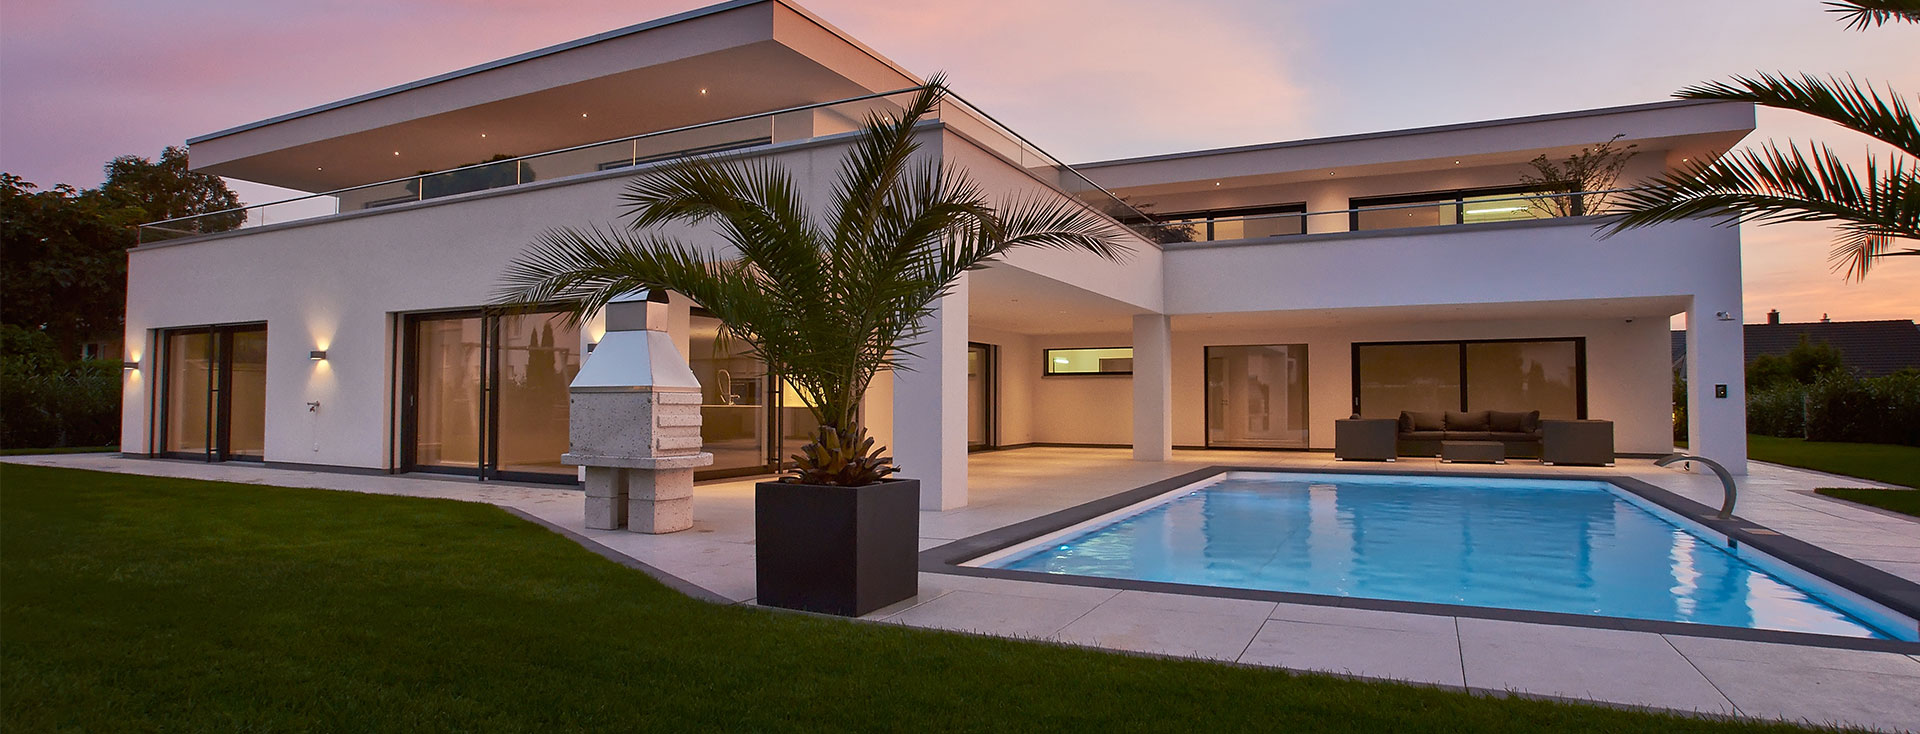 Maison individuelle avec piscine, grands éléments de fenêtre